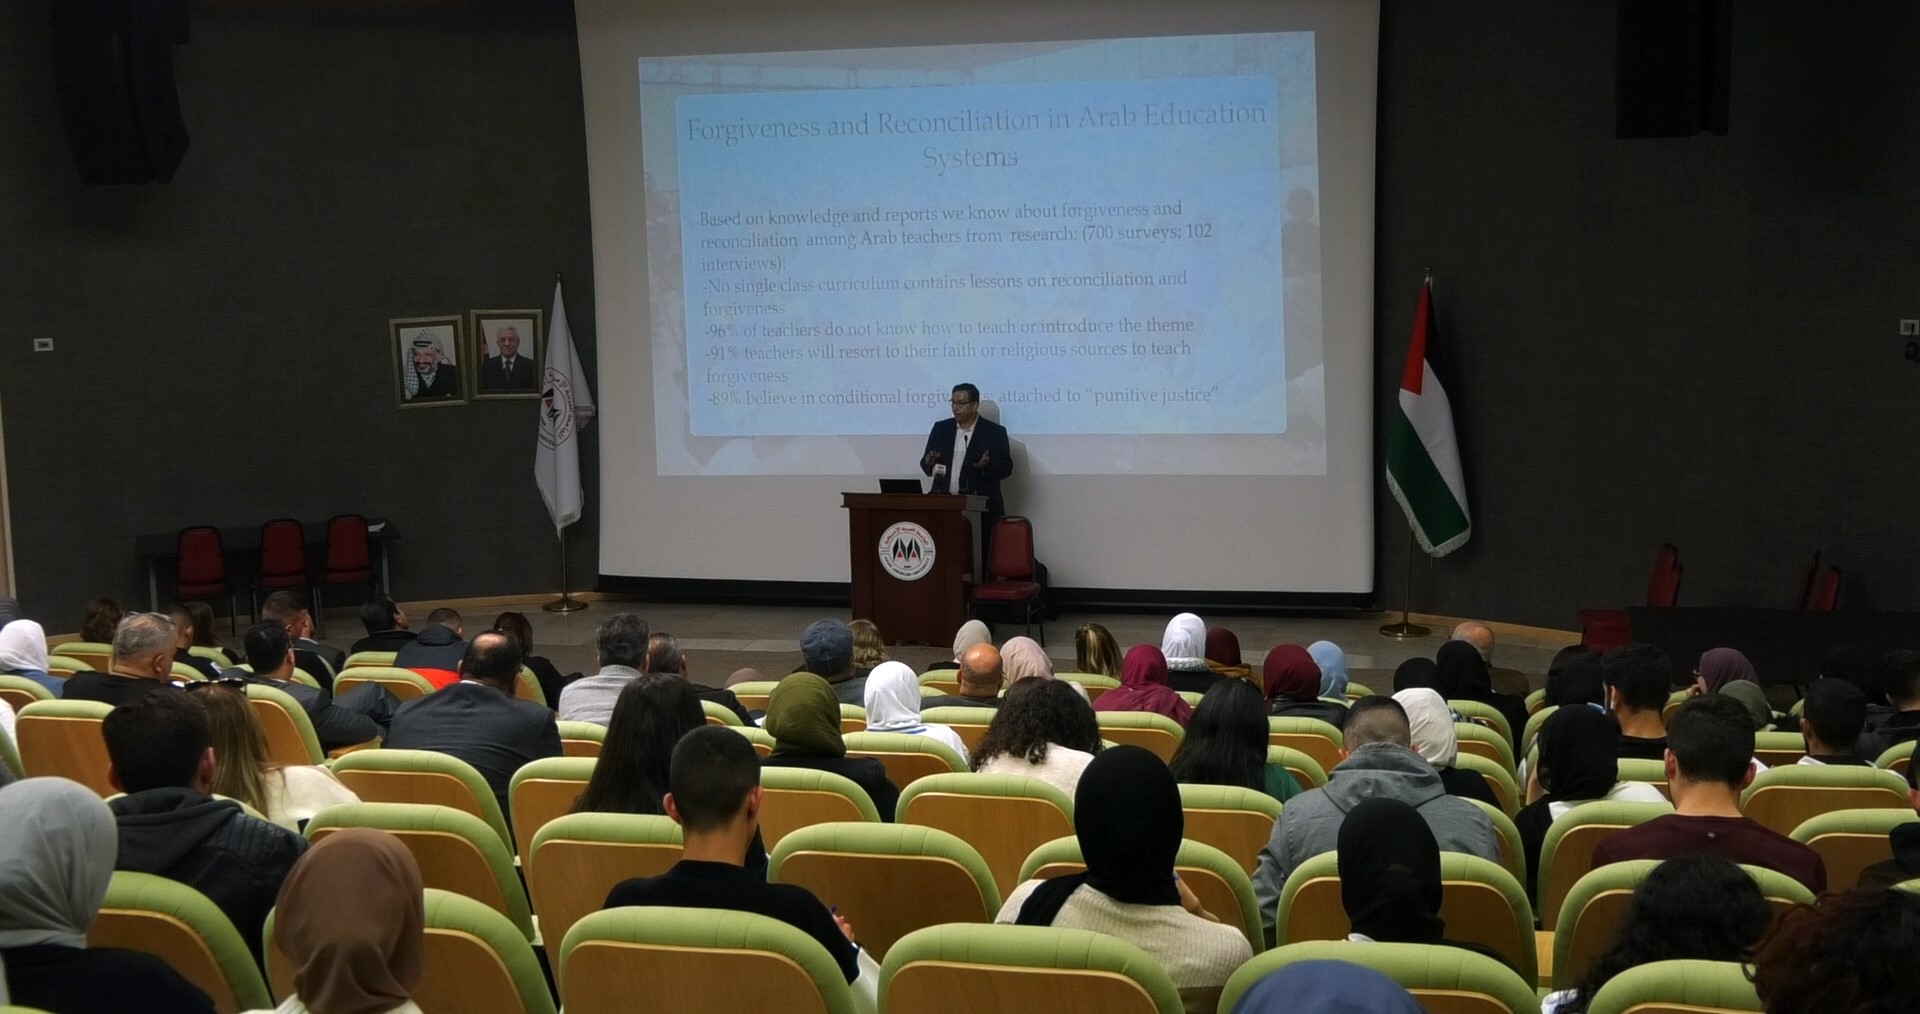 الجامعة العربية الأمريكية تنظم ندوة بعنوان "بحوث التسامح والمصالحة في النظام التعليمي العربي"